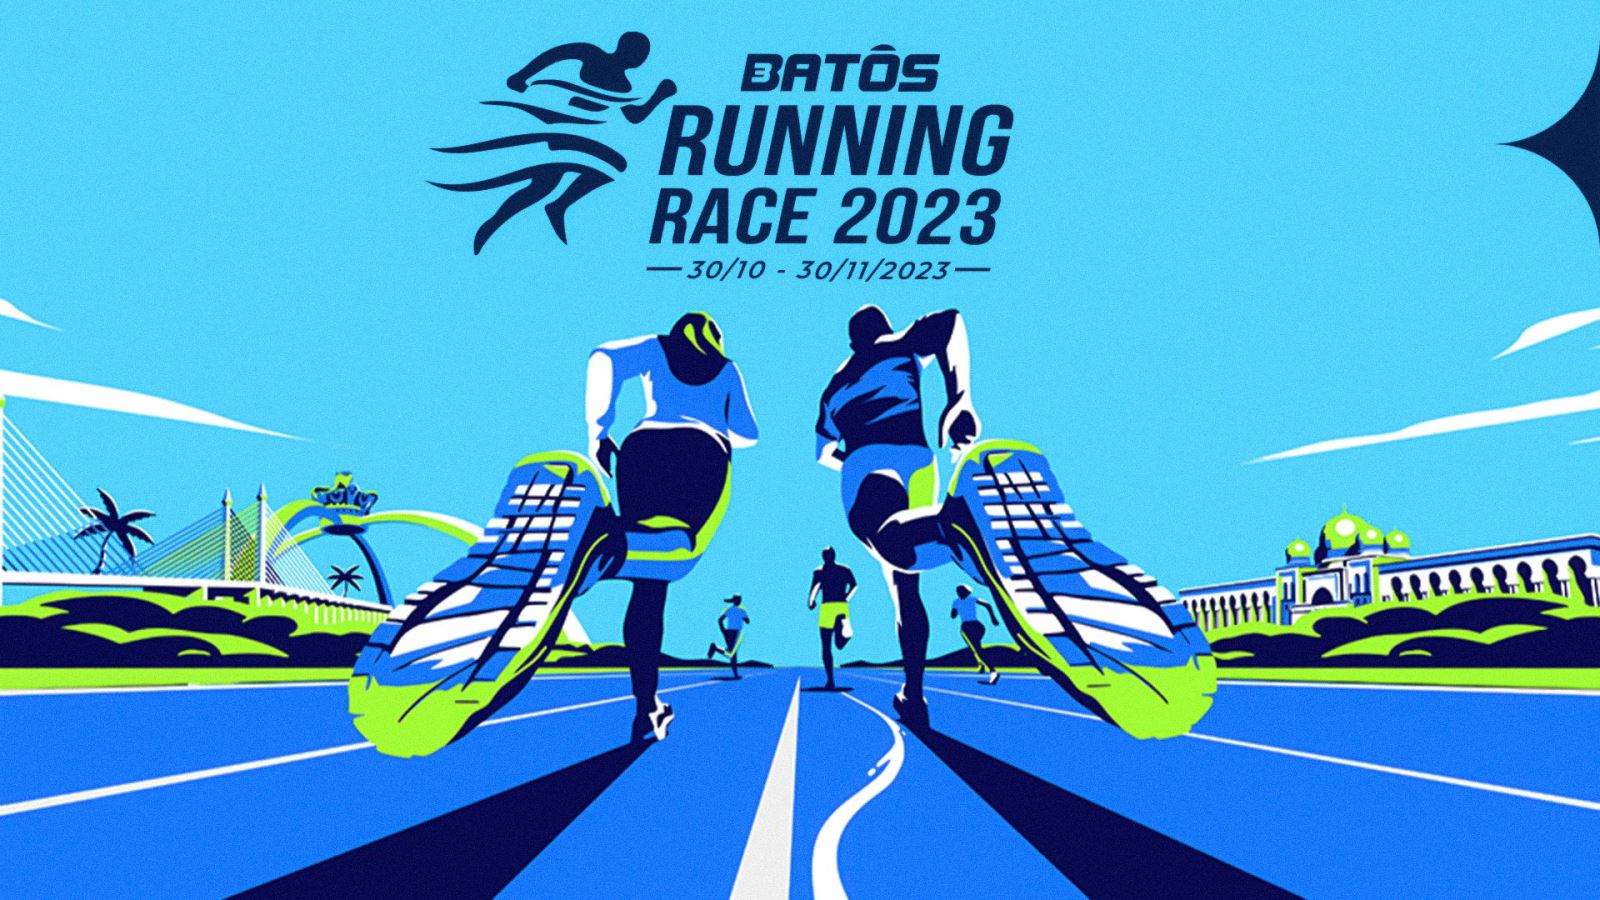 Thông báo khởi động giải chạy bộ online Batos Running Race 2023 